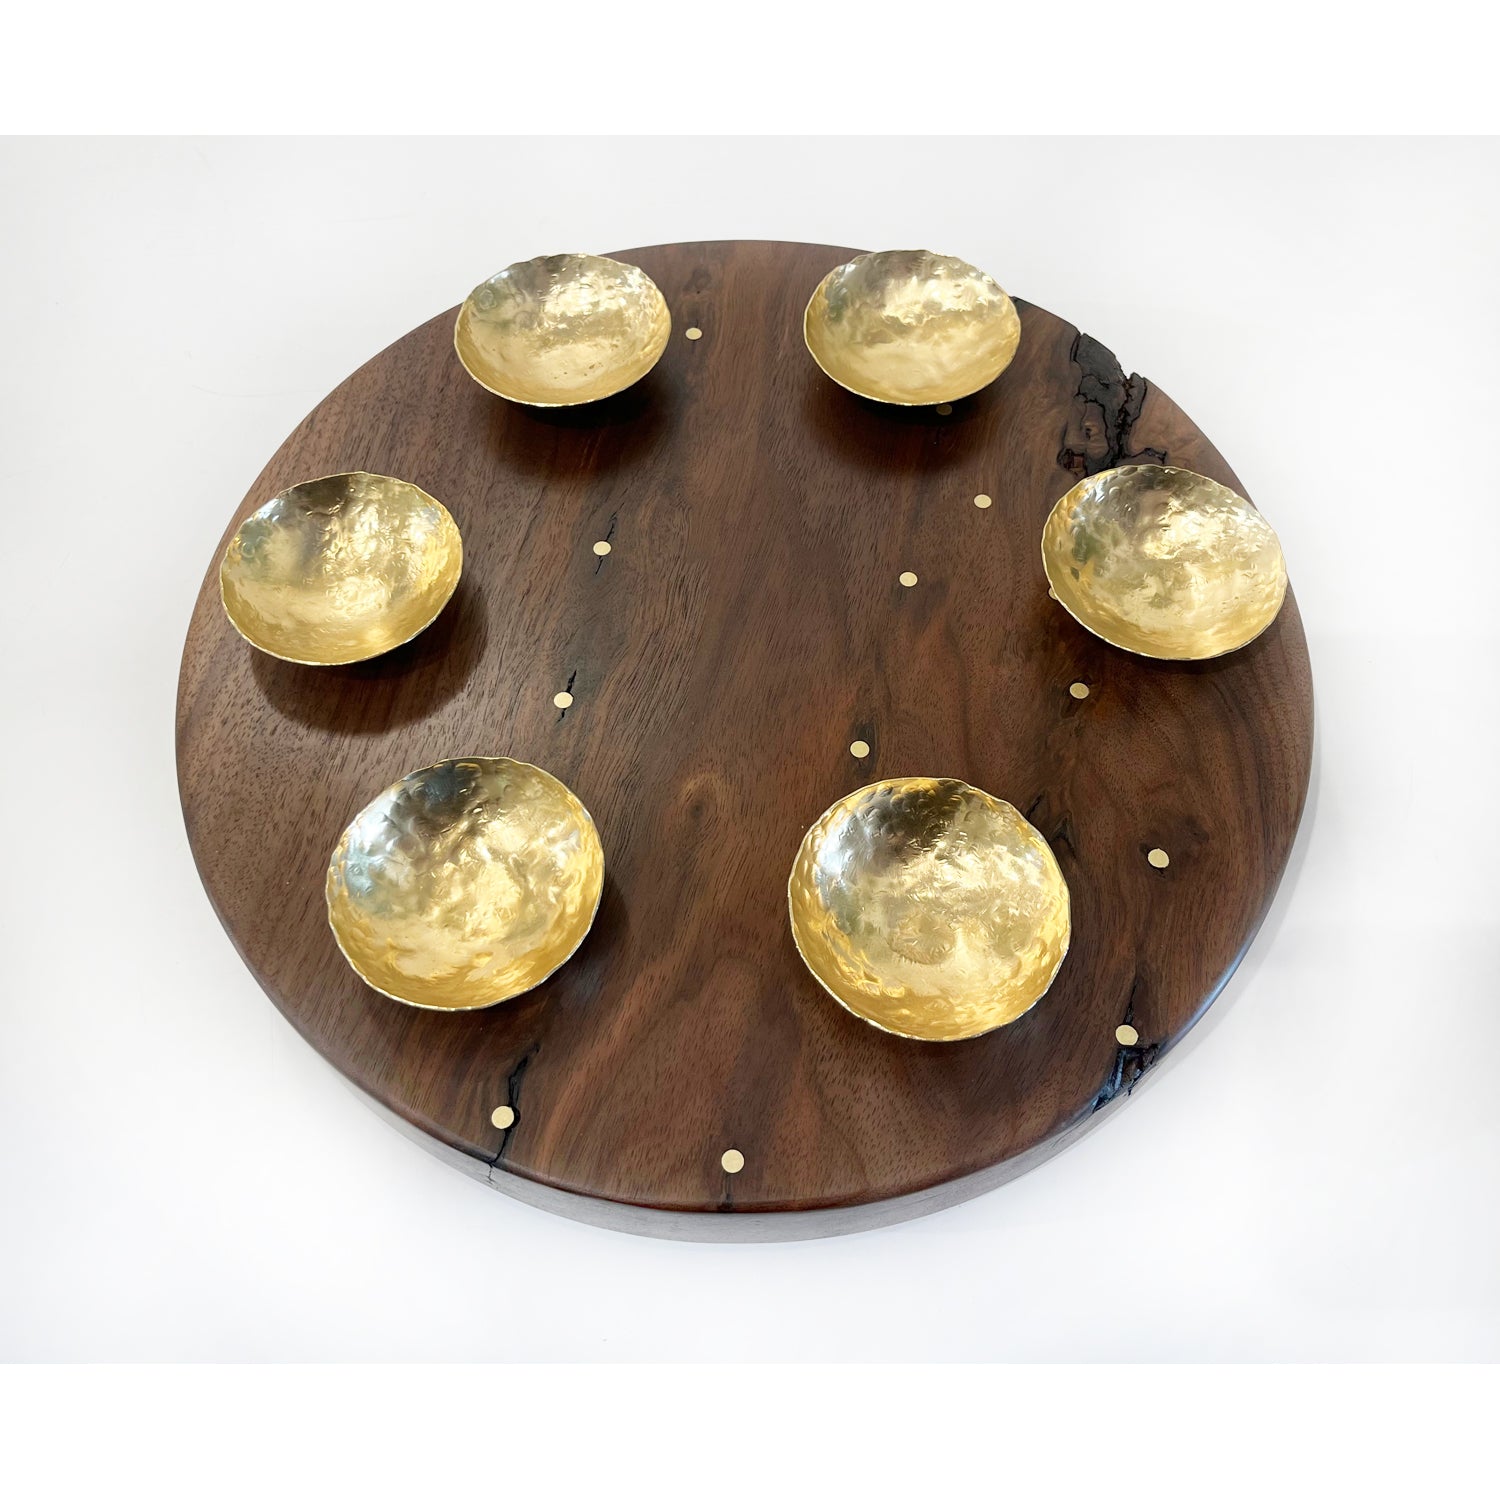 Debra Braun - Round Seder Plate with Brass Dishes, 12" diameter